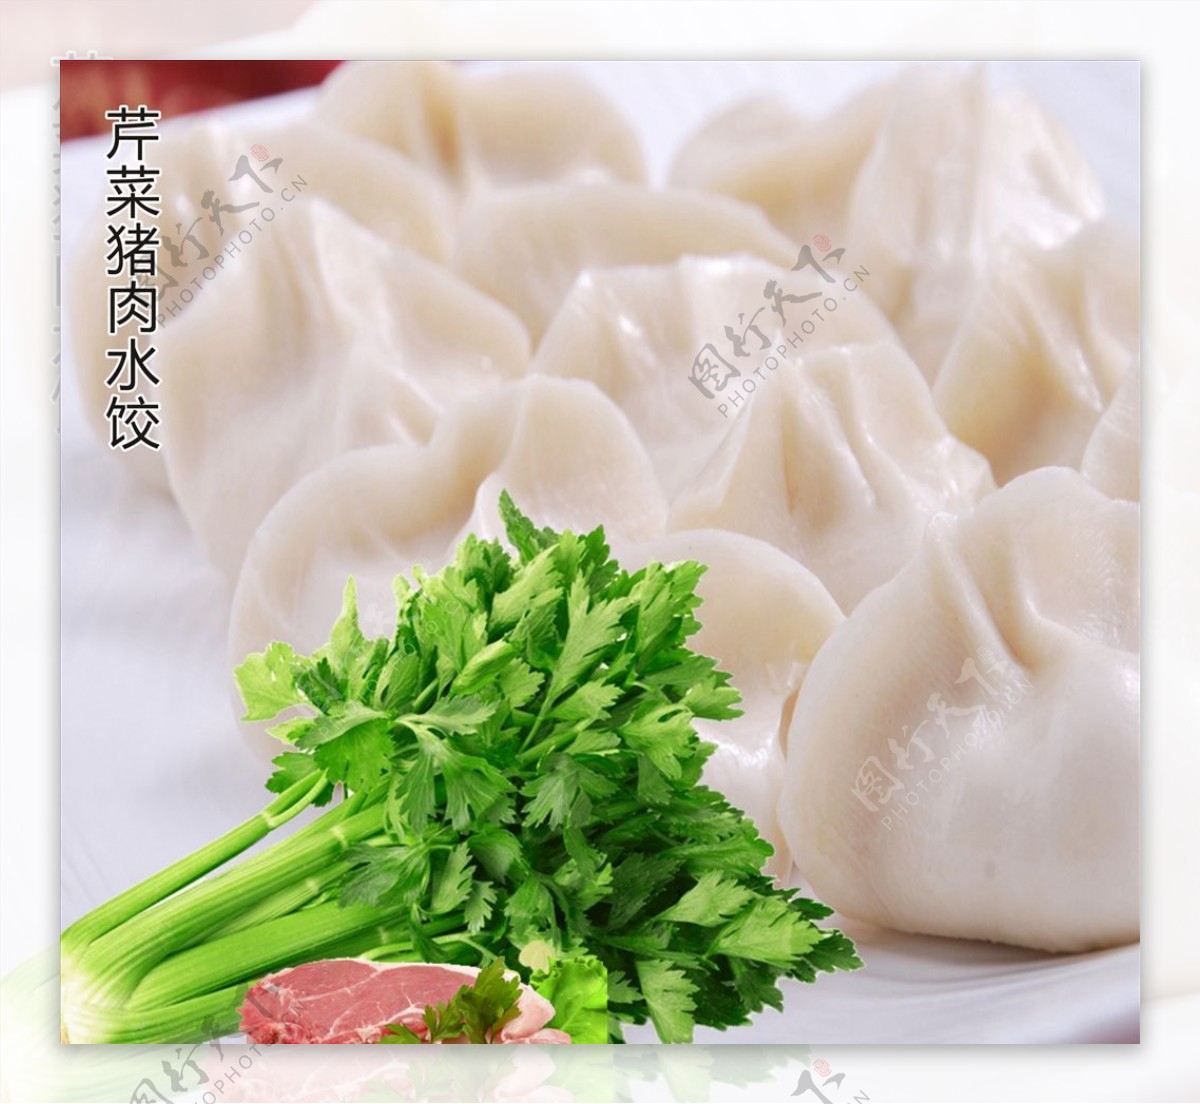 羊肉芹菜水饺,羊肉芹菜水饺的家常做法 - 美食杰羊肉芹菜水饺做法大全